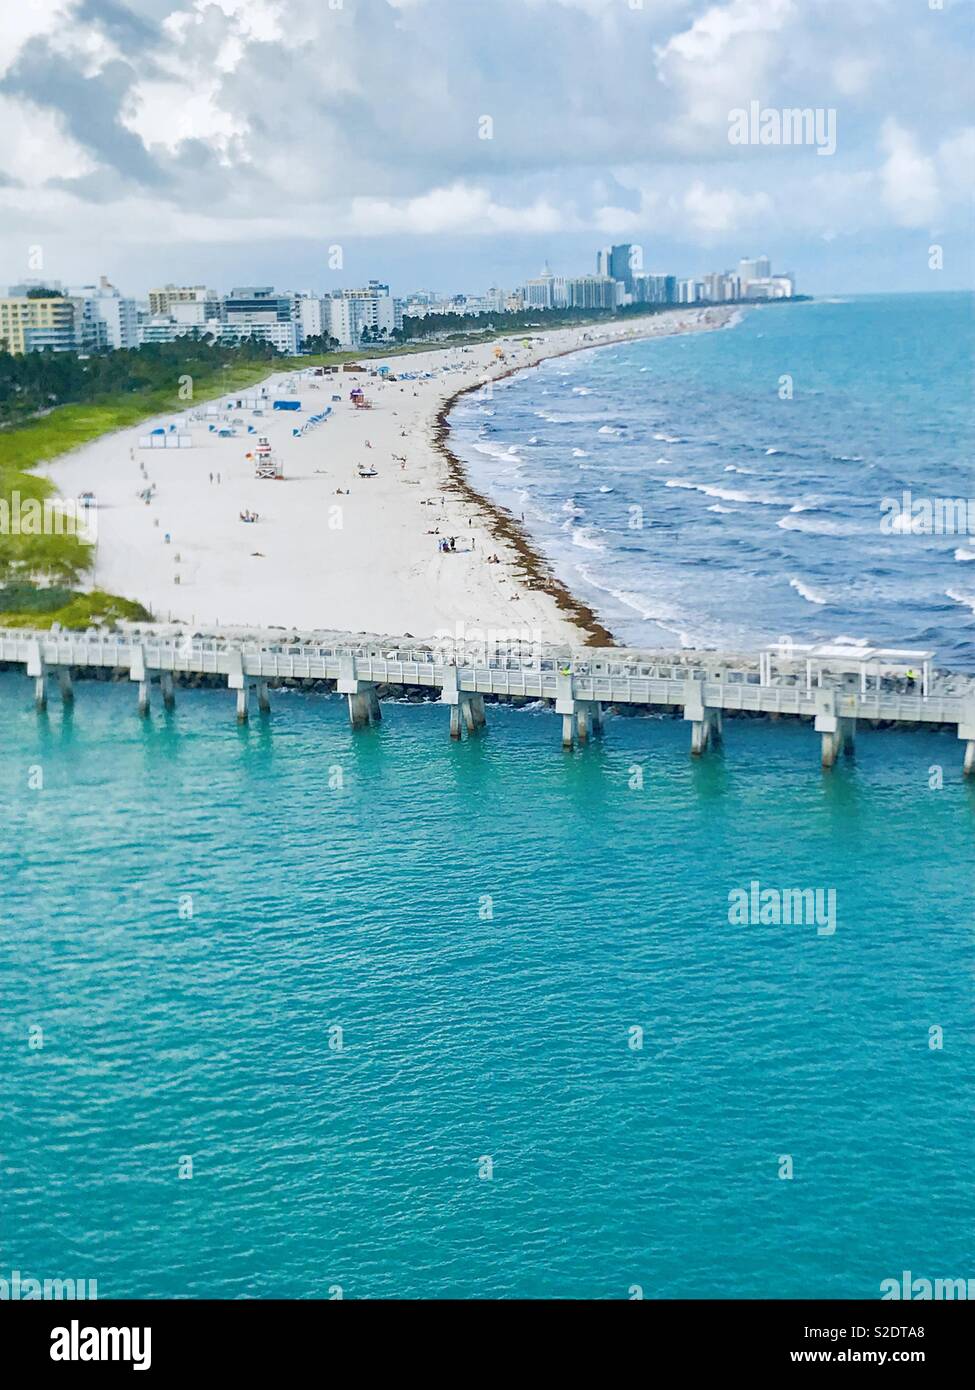 Miami South Beach Florida USA Stock Photo